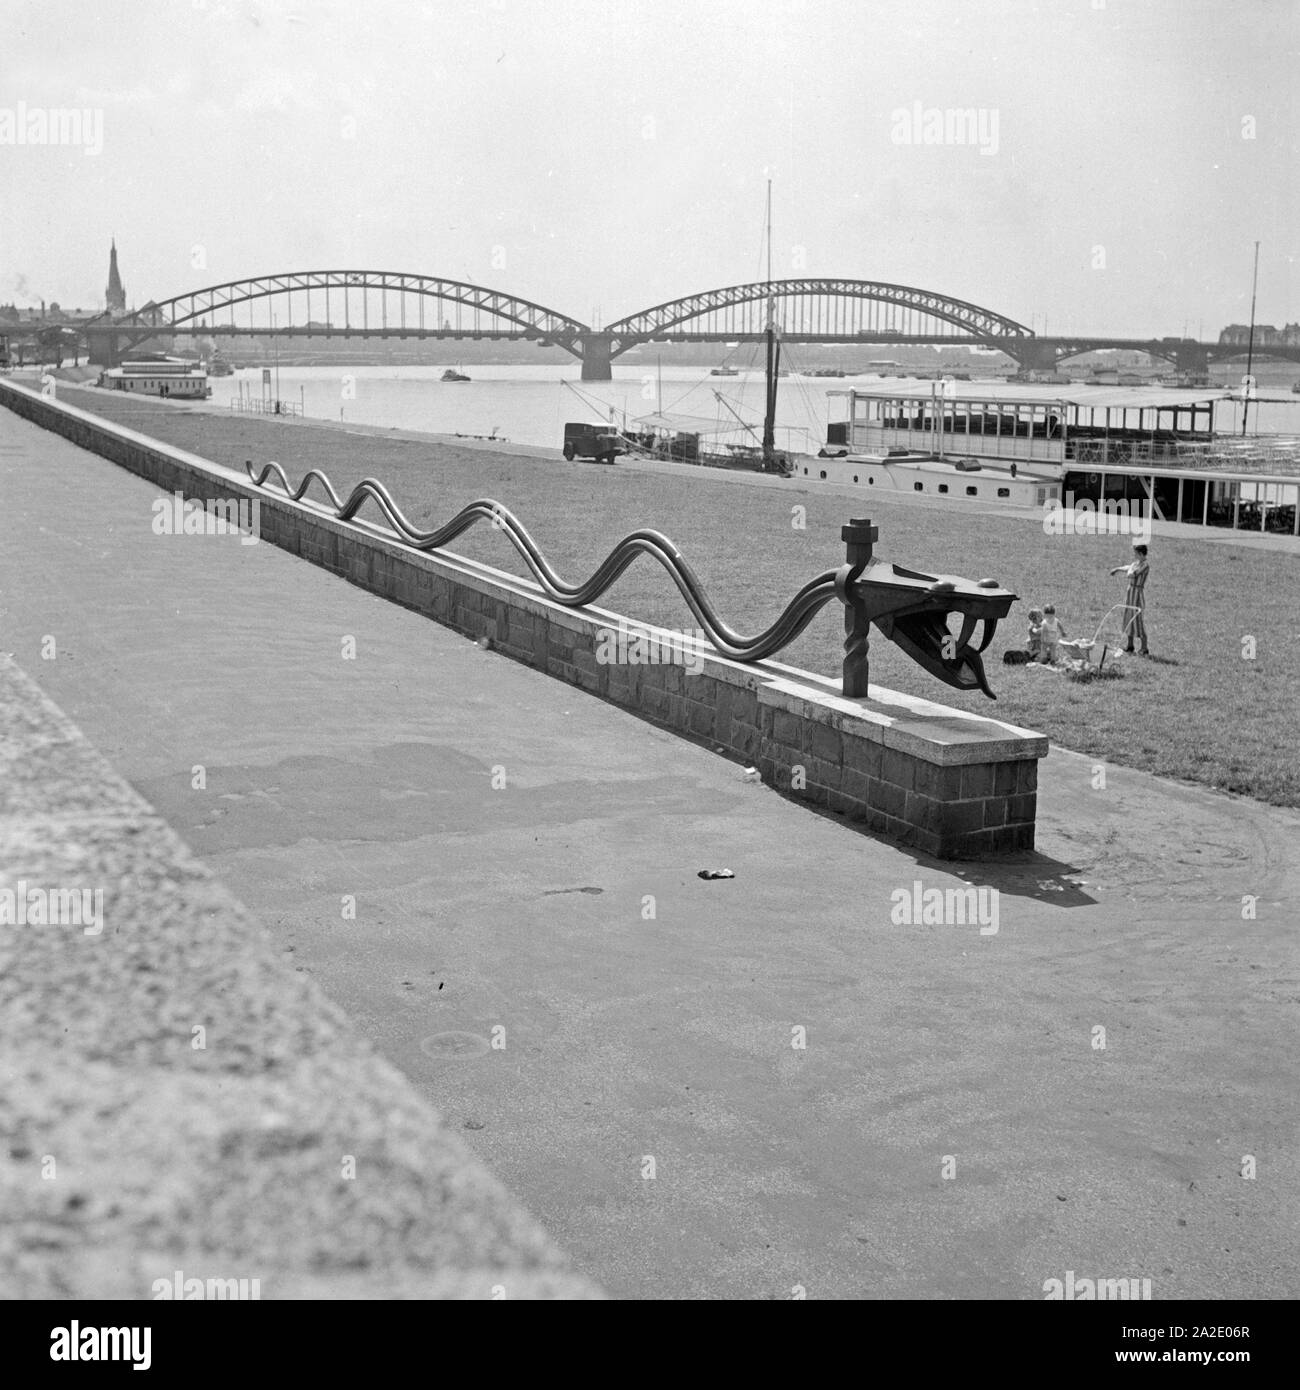 Die Rheinschlange suis Rheinufer à Düsseldorf, Deutschland 1930er Jahre. Rhin sculpture serpent au bord du Rhin à Düsseldorf, Allemagne 1930. Banque D'Images